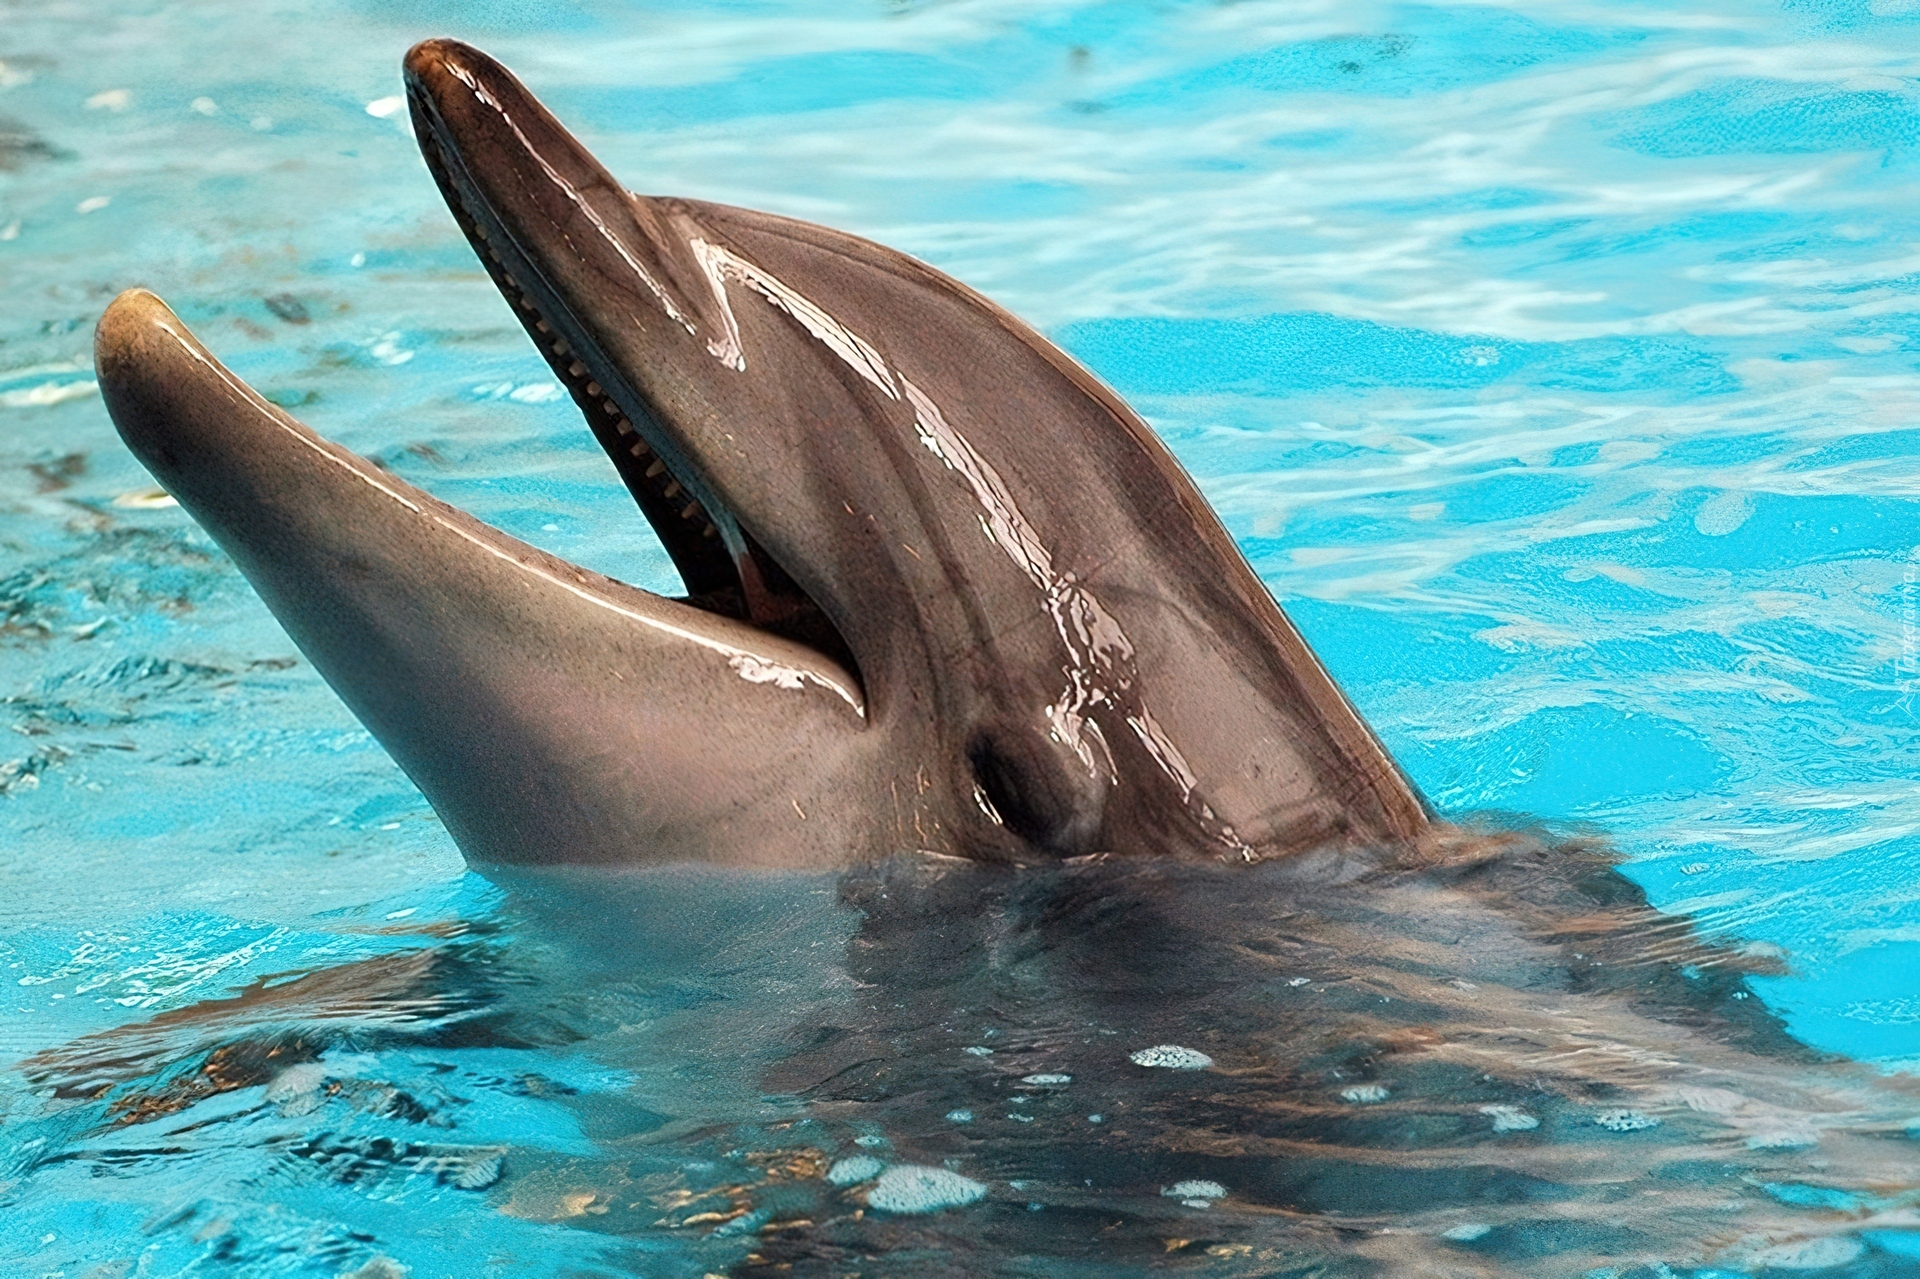 Дельфин относится к группе животных